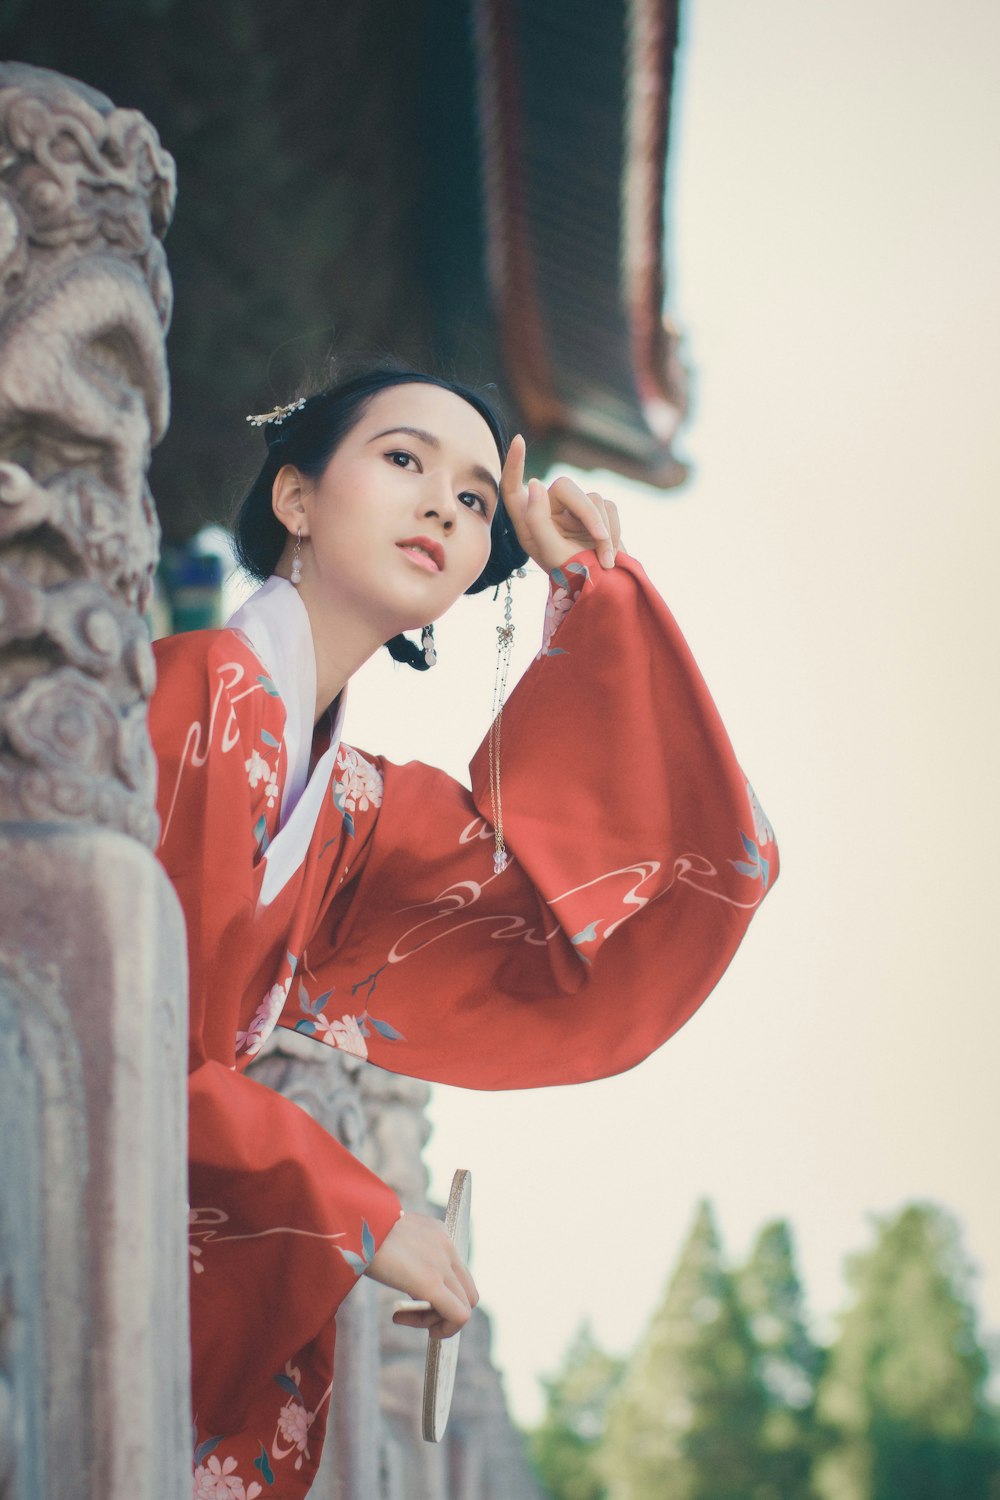 ragazza in kimono rosso e bianco